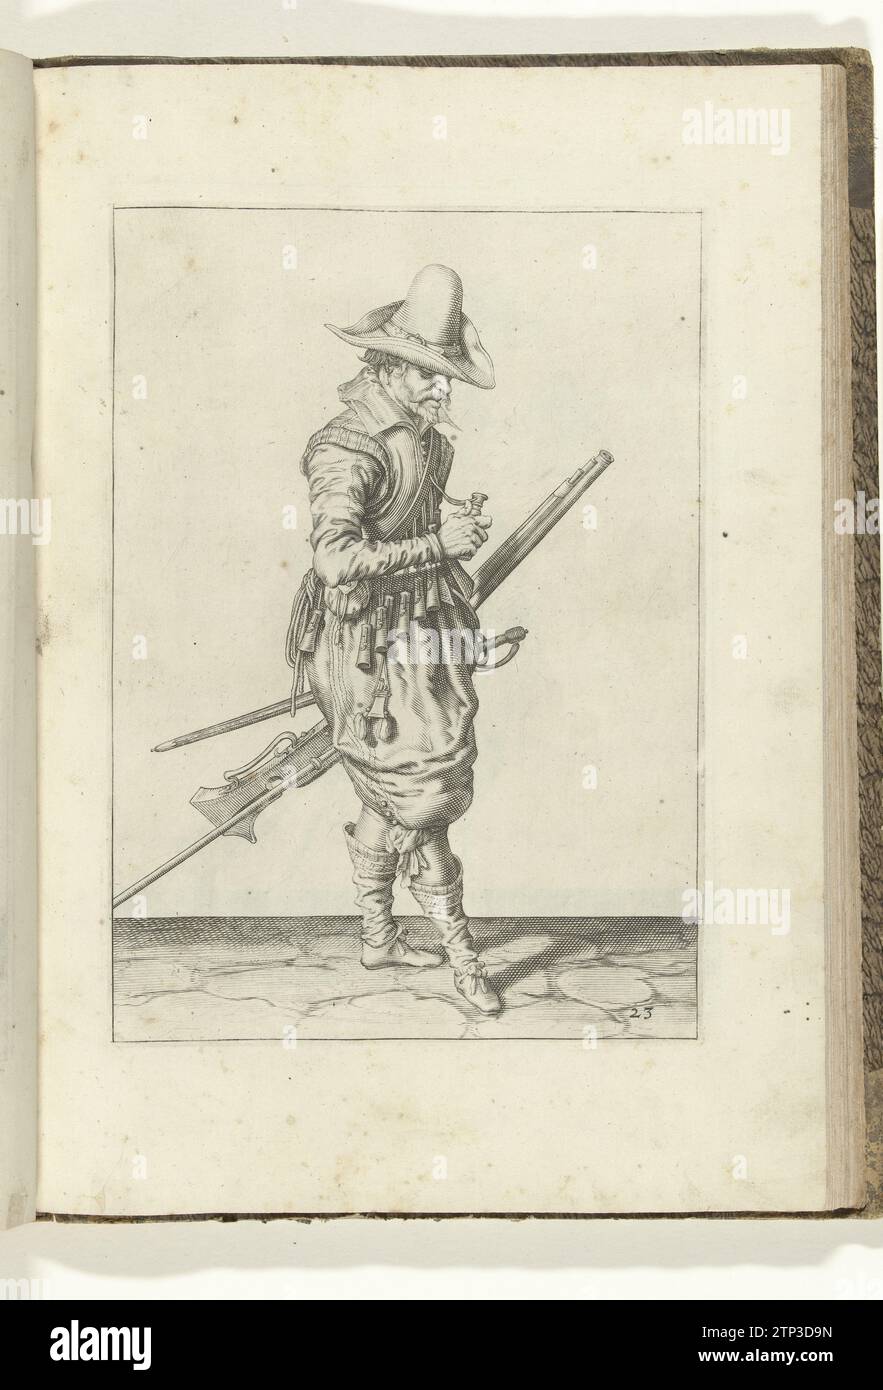 Soldat mit einer Muskete, die eine Pulvergröße öffnet (Nr. 23), ca. 1600, 1597 – 1608 Ein Soldat, rechts, der eine Muskete (eine bestimmte Art Schusswaffe) mit der linken Hand am linken Oberschenkel (eine bestimmte Art Schusswaffe) hält, die nach oben zeigt (Nr. 23), ca. 1600. In seiner linken Hand, neben der Muskete auch eine Furket (Muskettengabel). Mit seiner rechten Hand öffnet er einen der Puderfreunde auf seinem bandelier. Platte 23 in der Anleitung zur Handhabung der Muskete: Letter Enseigement, Sur Les Pourtraitz Figurez, Touchant le Droit Maniement du Mousquet. Teil der Illustrationen in A Fre Stockfoto